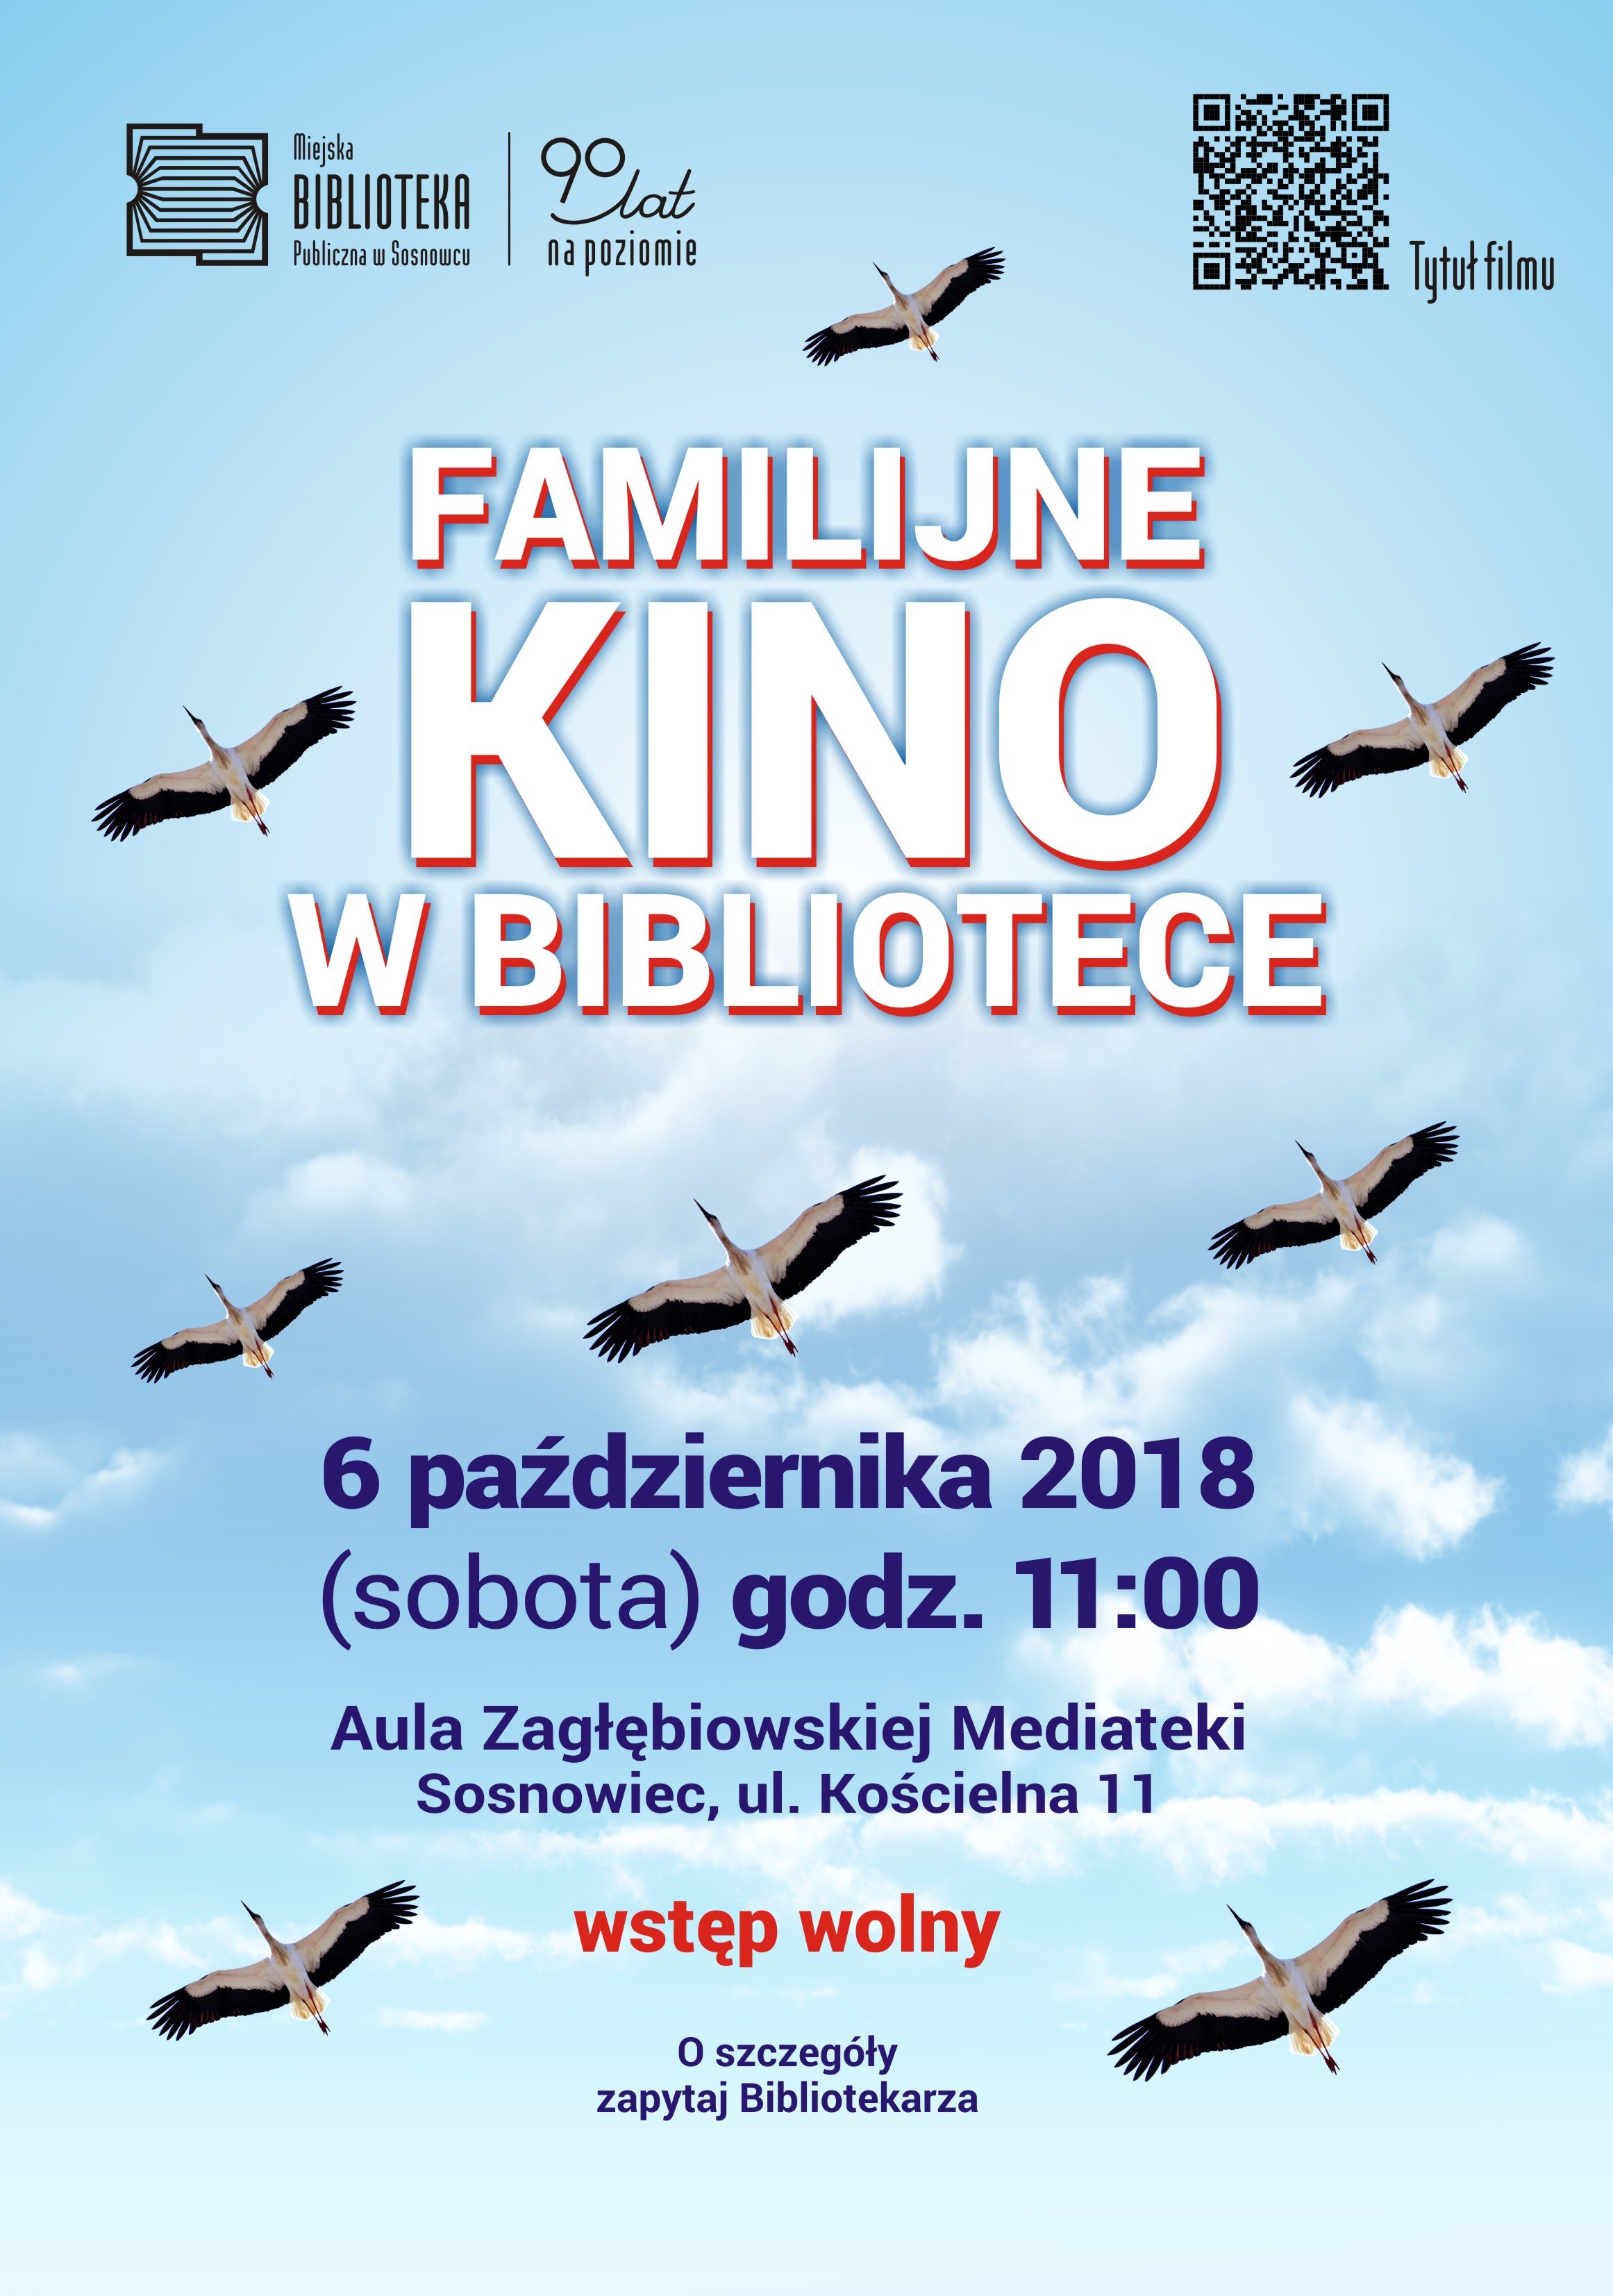 Familijne Kino w Bibliotece w Sosnowcu